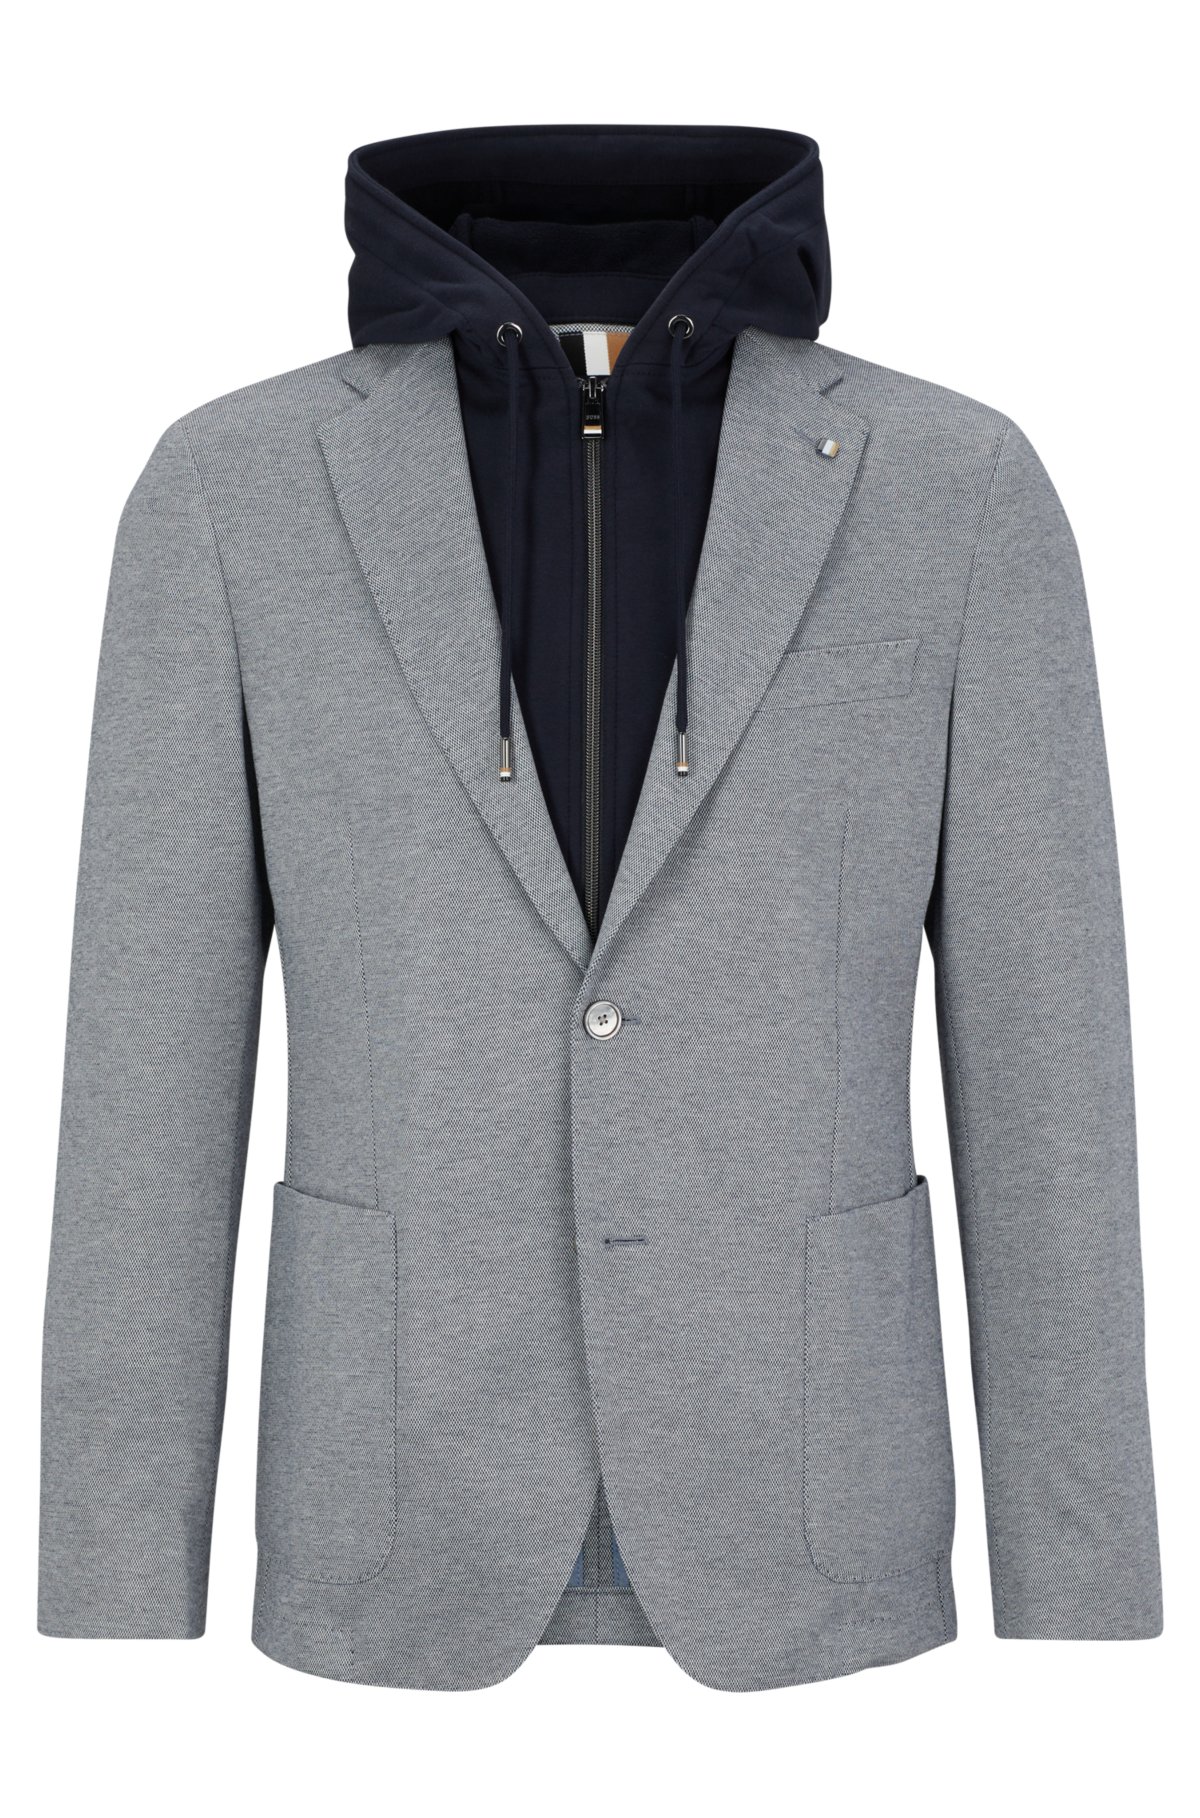 Voetzool herhaling hartstochtelijk BOSS - Slim-fit jacket with zip-up stretch-cotton hoodie